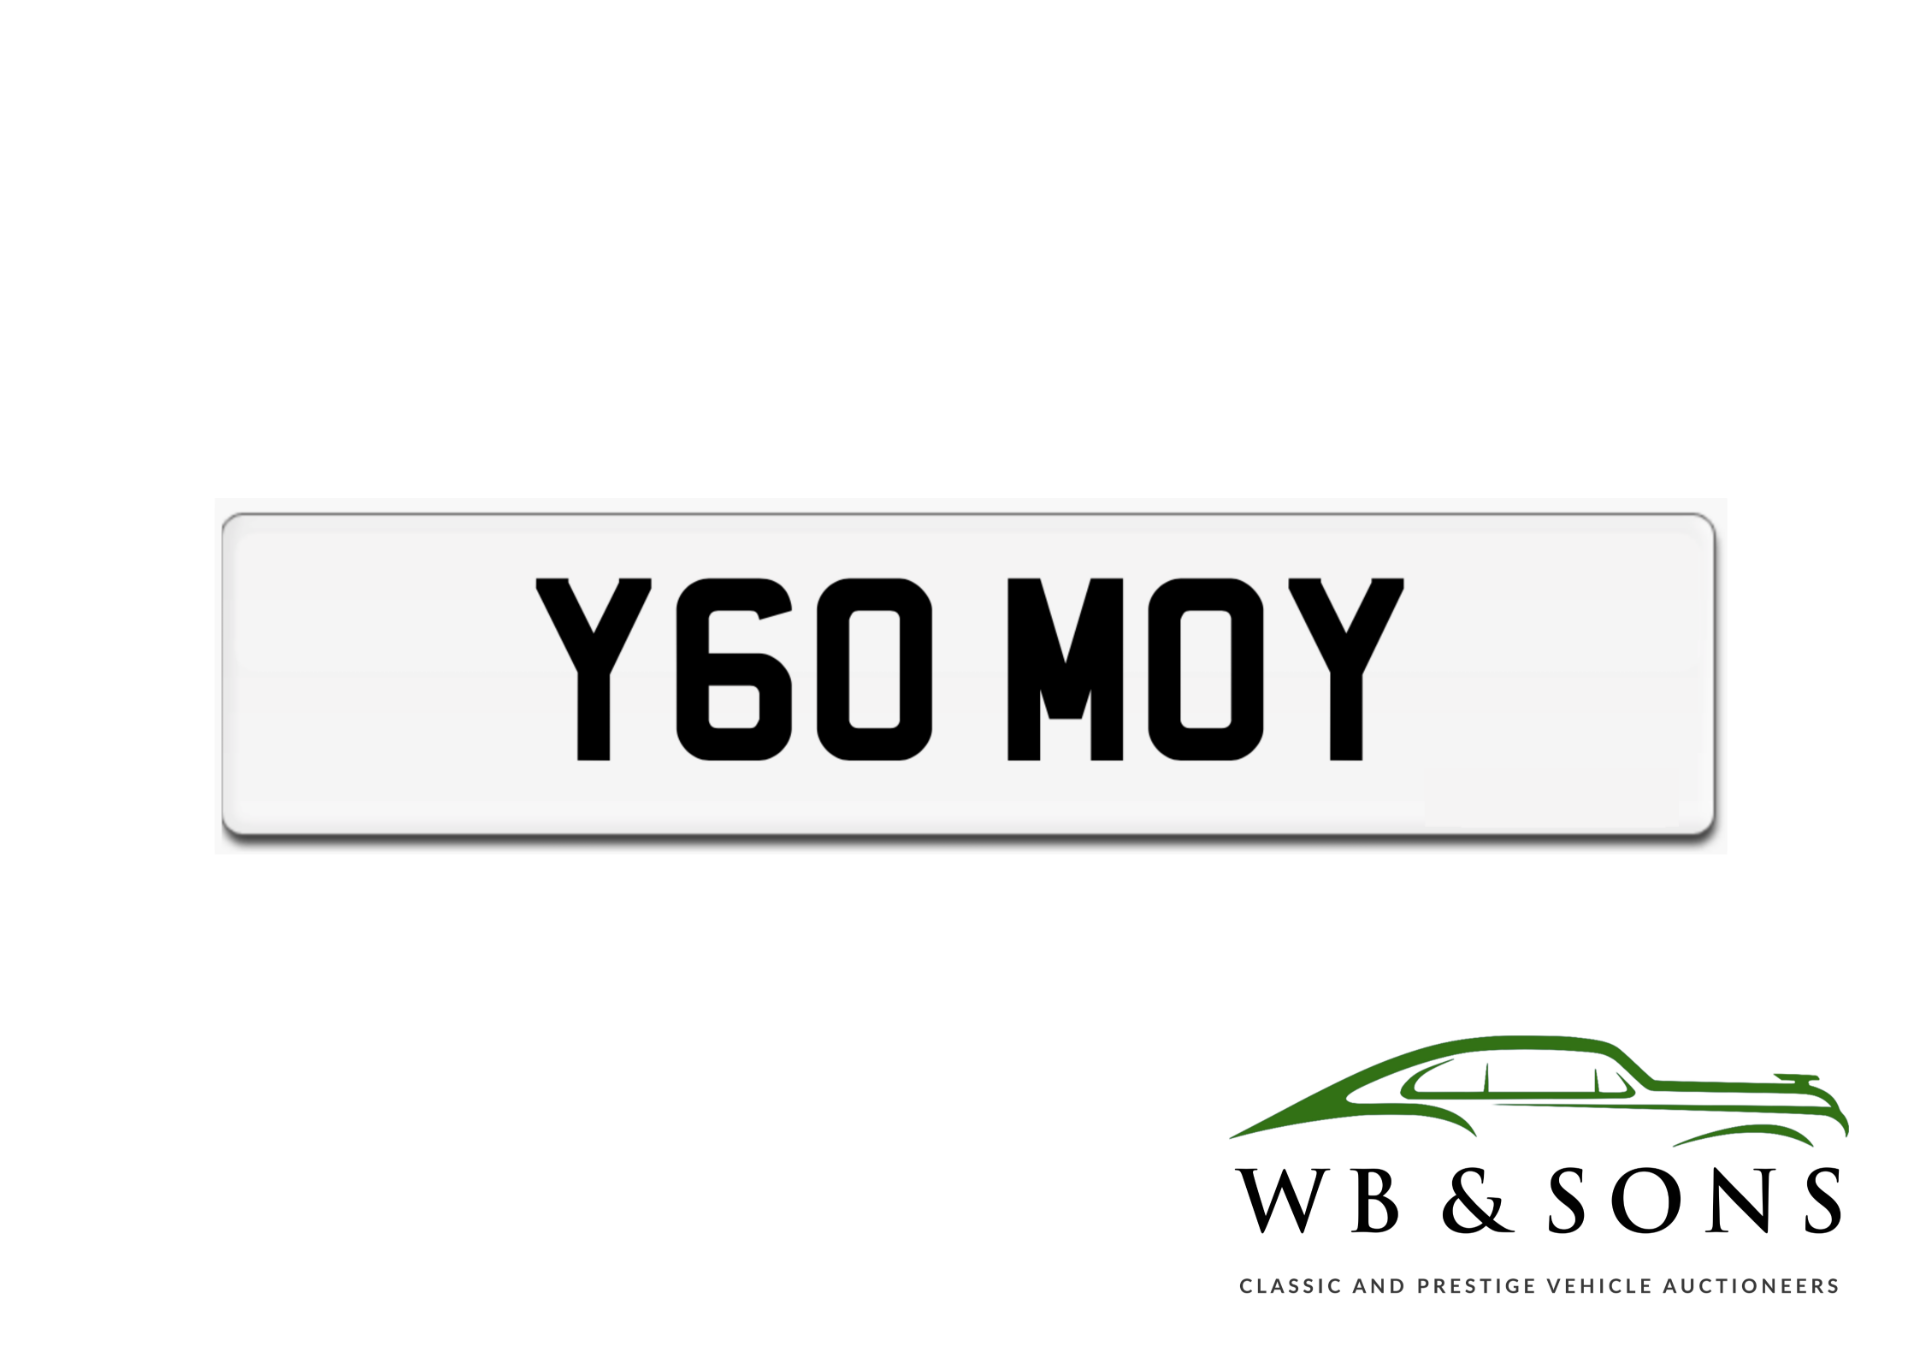 Registration - Y60 MOY